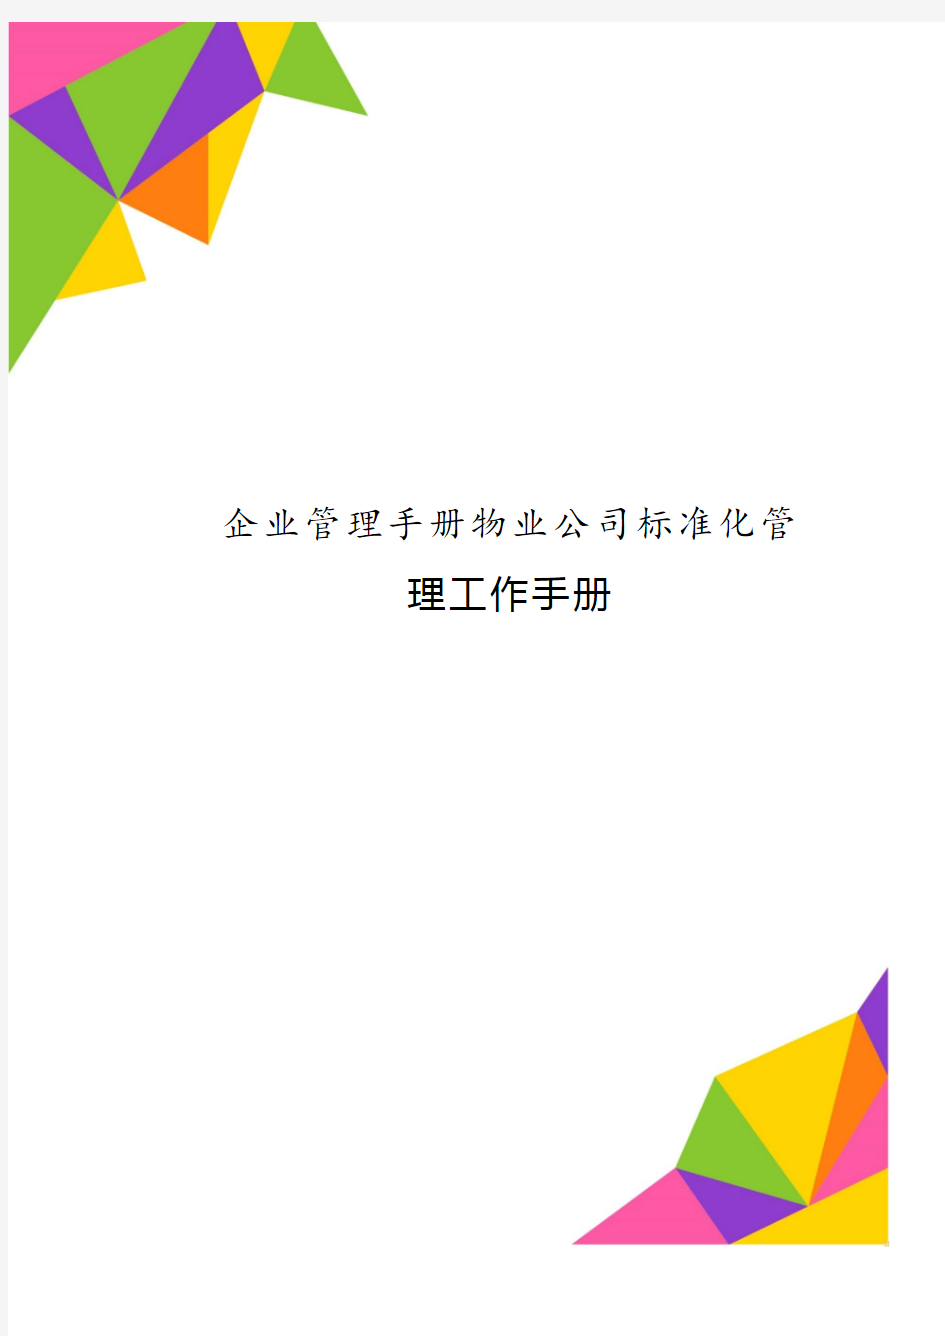 企业管理手册物业公司标准化管理工作手册.pdf